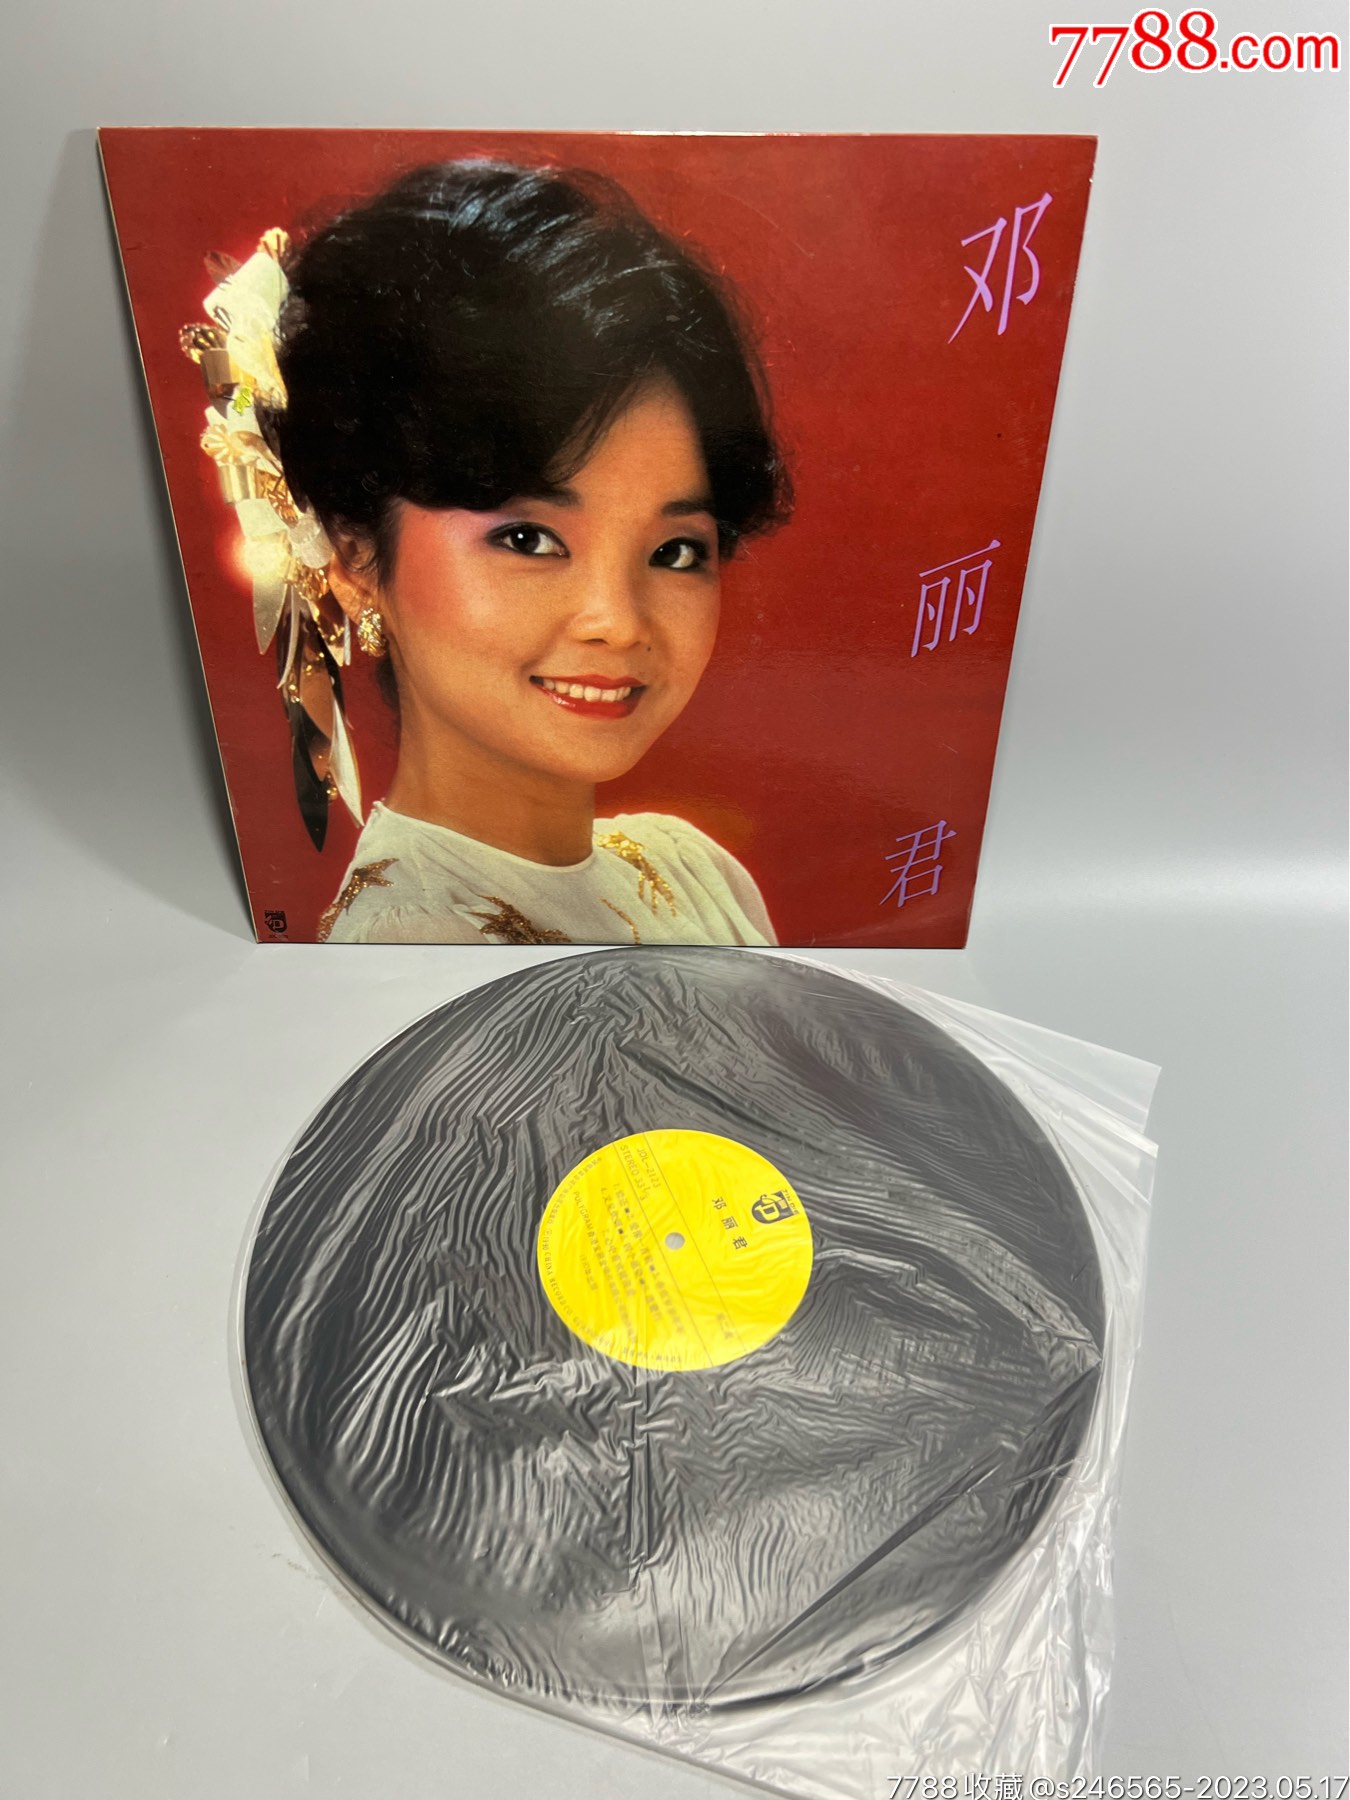 邓丽君12寸黑胶唱片（中唱引进版） 价格250元 Au34027010 老唱片胶片 加价 7788收藏收藏热线 7613